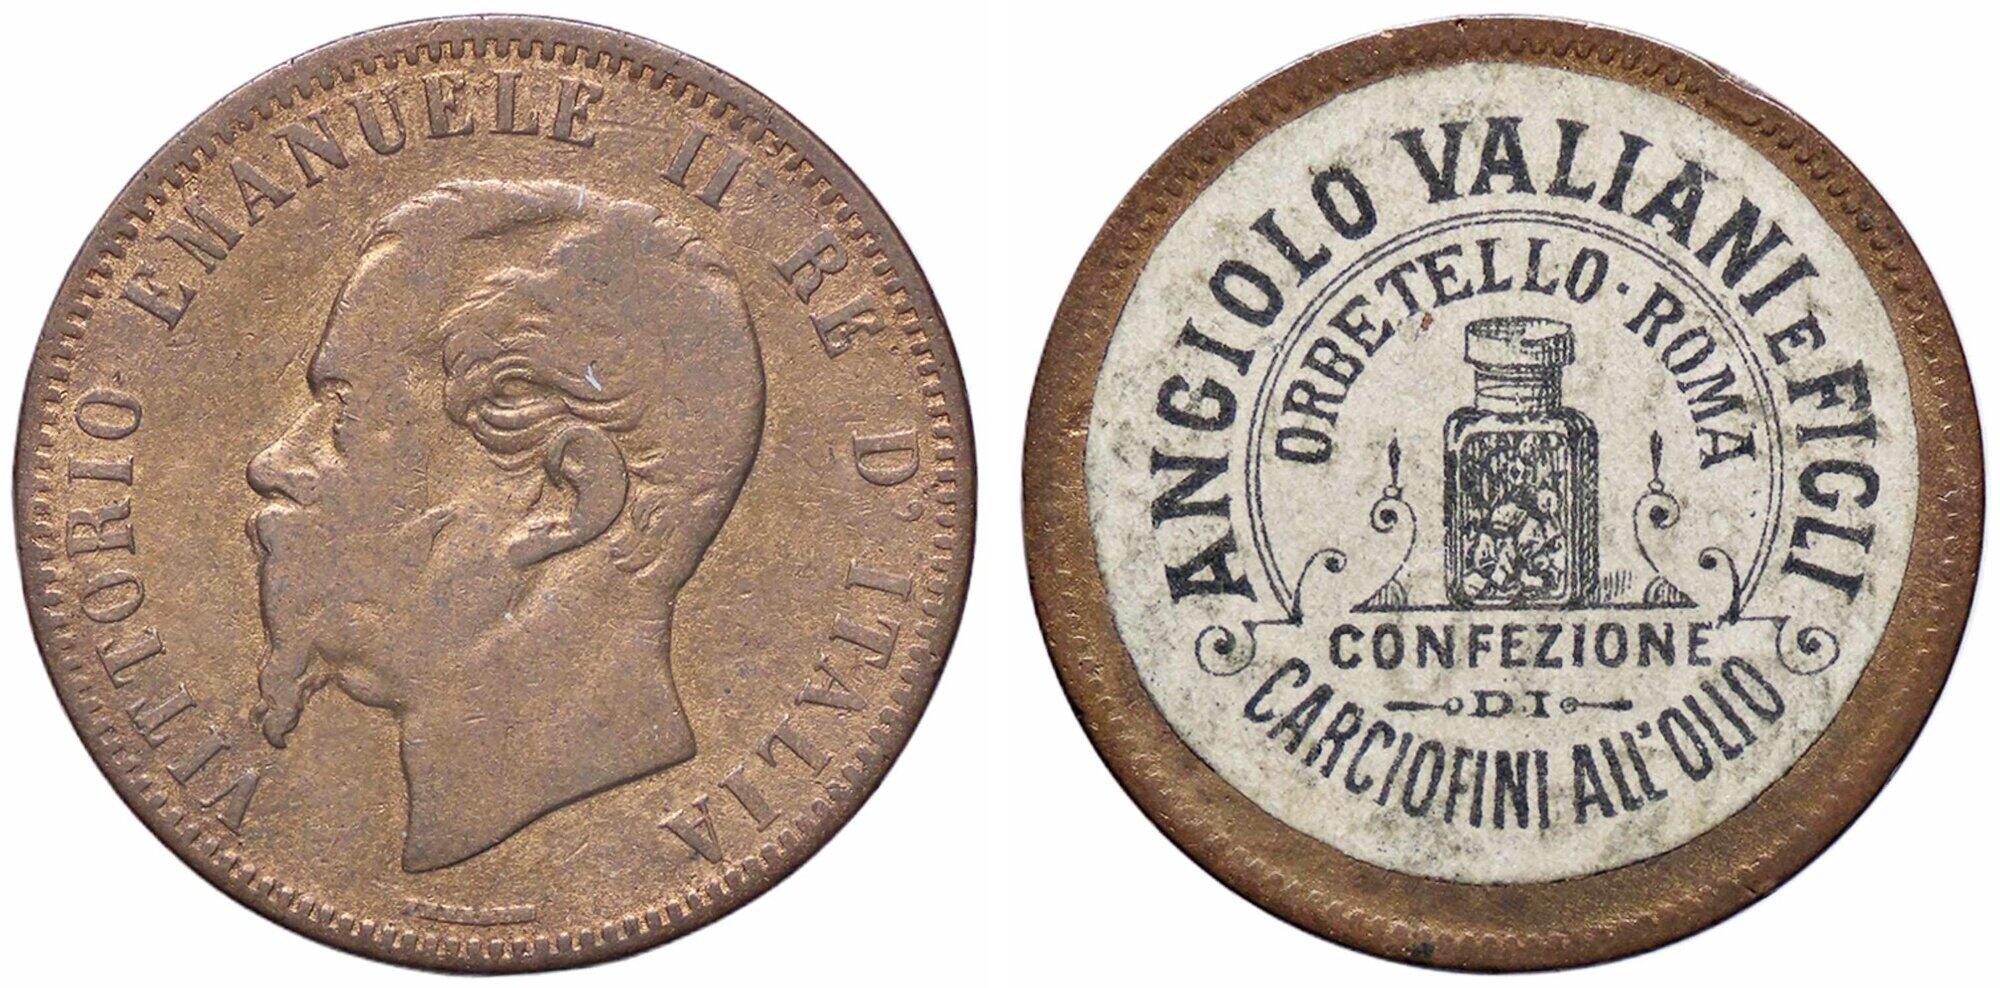 Una moneta da 10 centesimi di Vittorio Emanuele II trasformata in un curioso gettone pubblicitario per il celebre carciofino sott'olio della ditta Angiolo Valiani e Figli